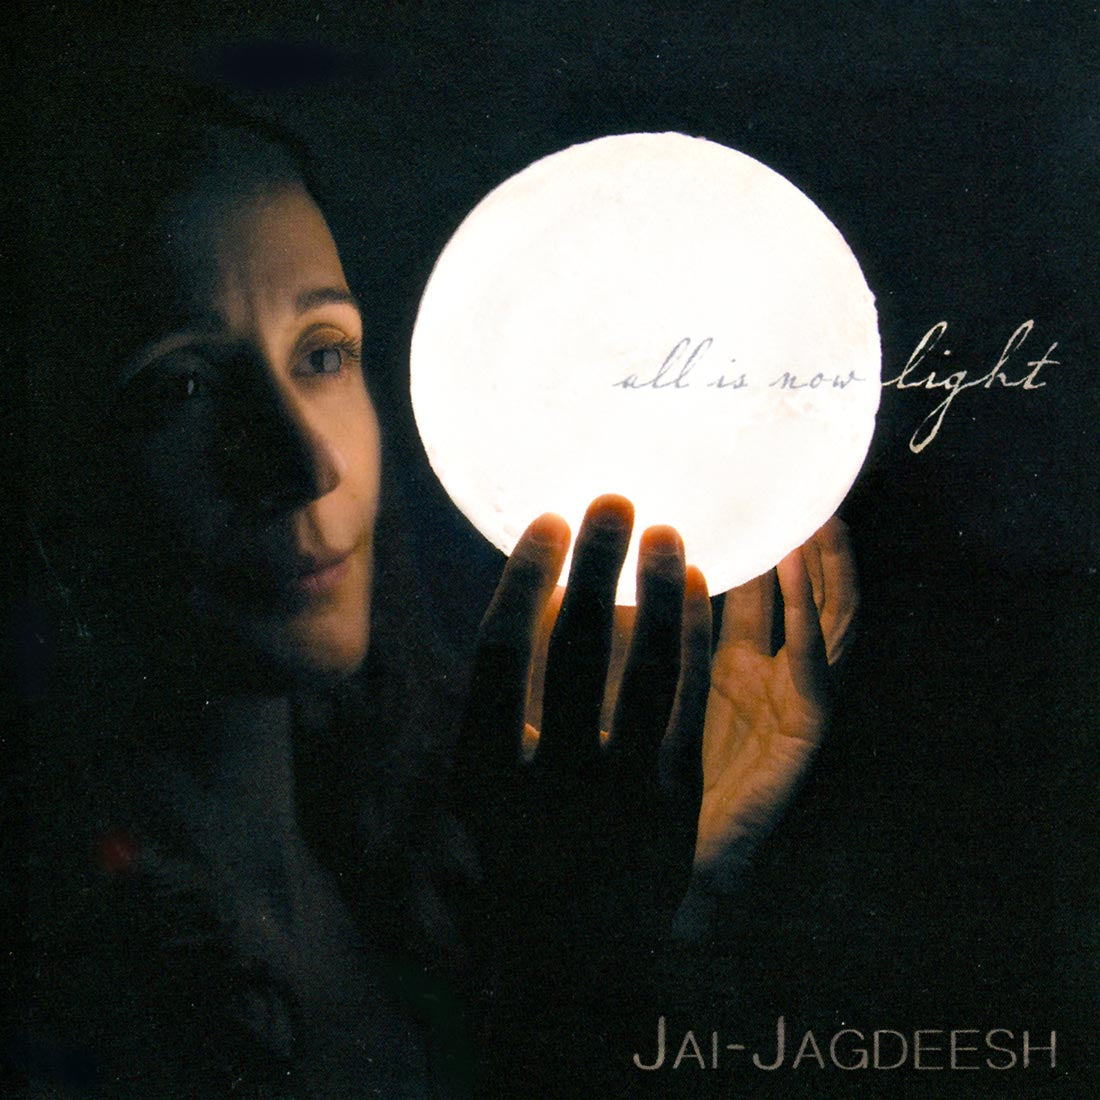 All Is Now Light (Sadhana) - Jai-Jagdeesh complete